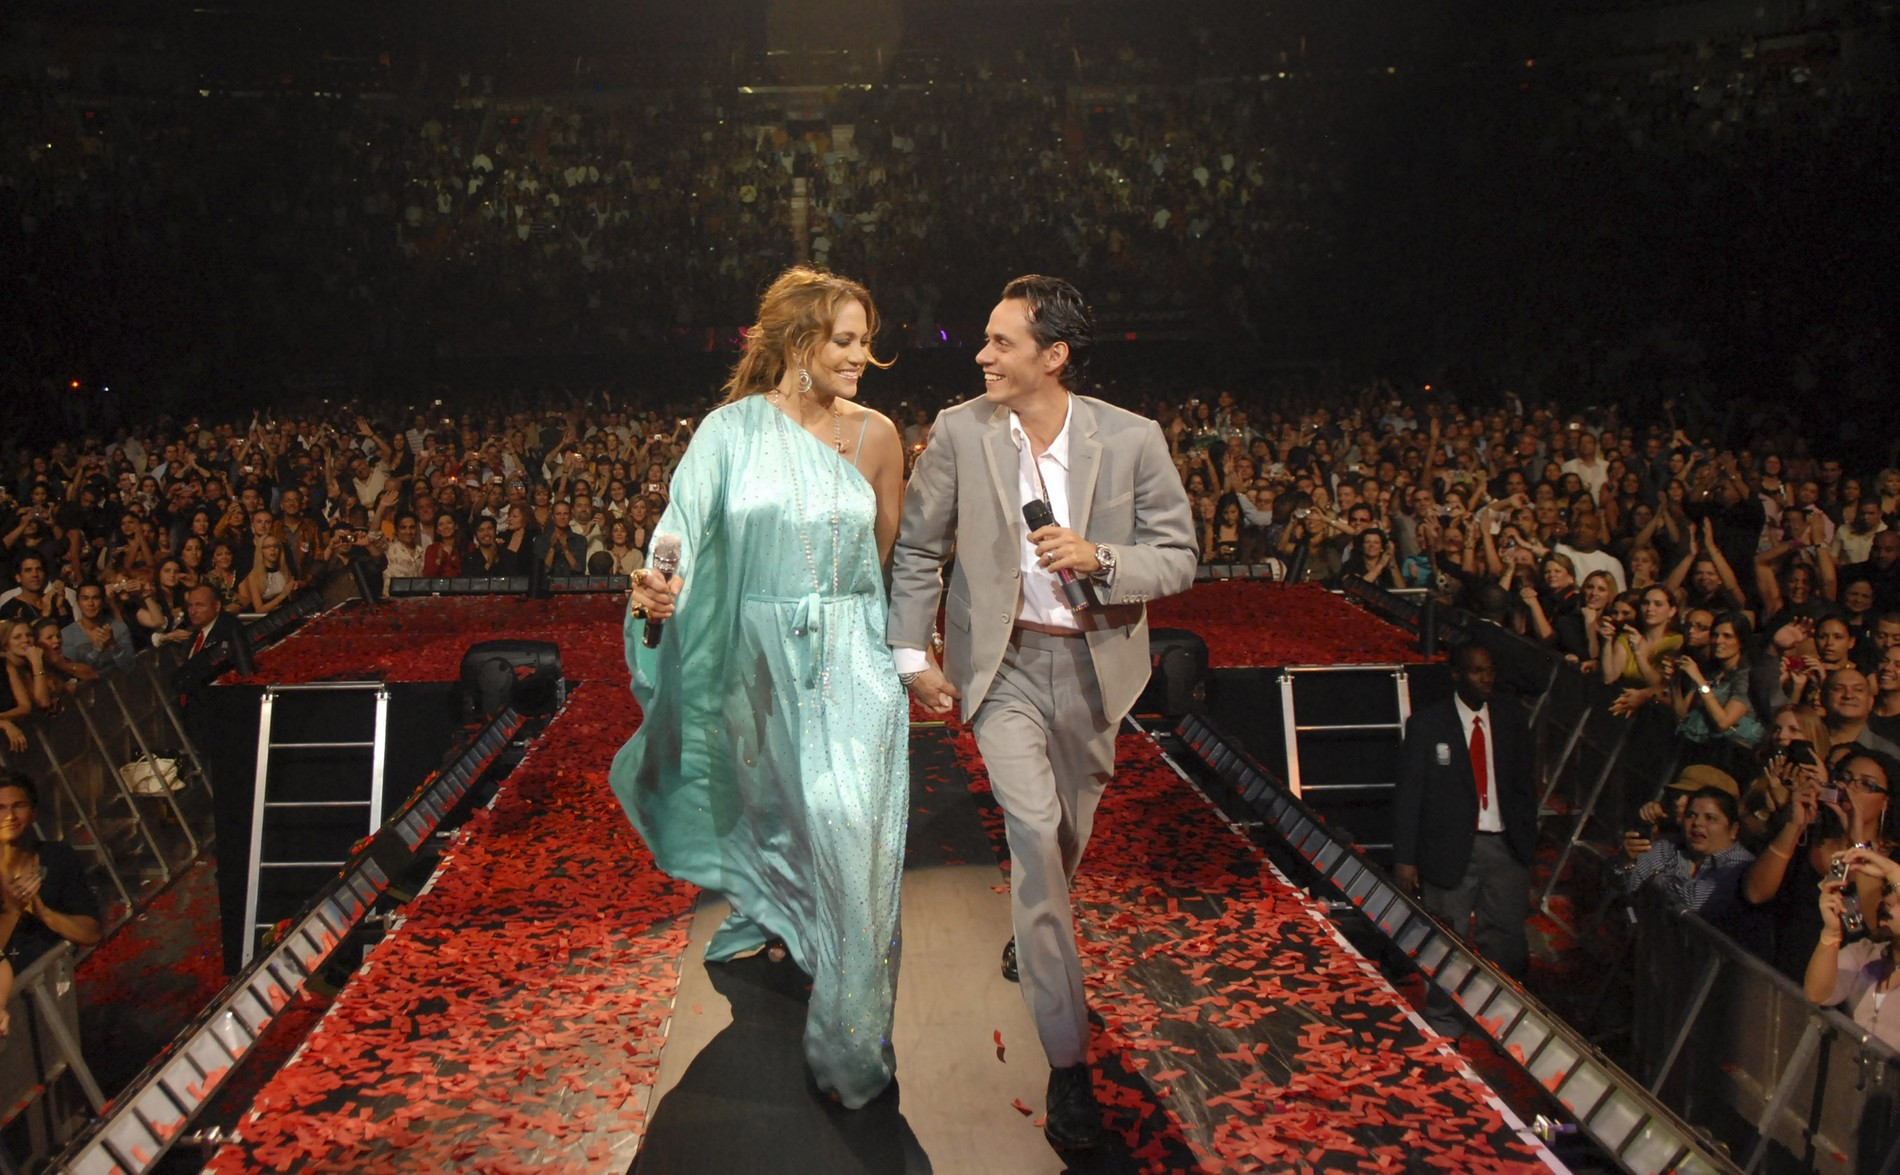 Дженнифер Лопес и Марк Энтони на заключительном концерте тура в 2007 году. Фото: Getty Images